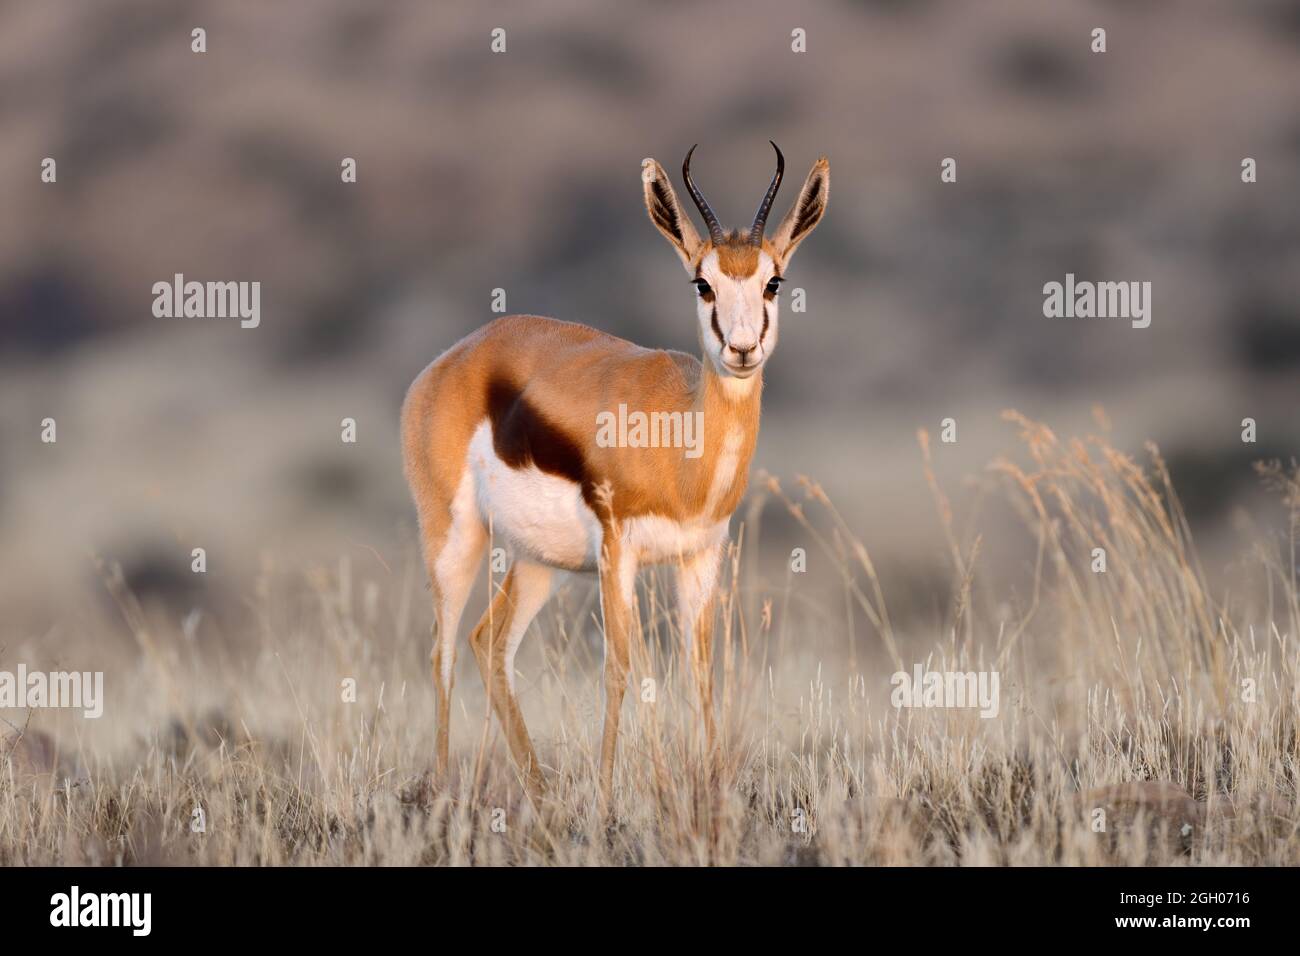 A springbok antelope (Antidorcas marsupialis) in grassland, Mokala National Park, South Africa Stock Photo